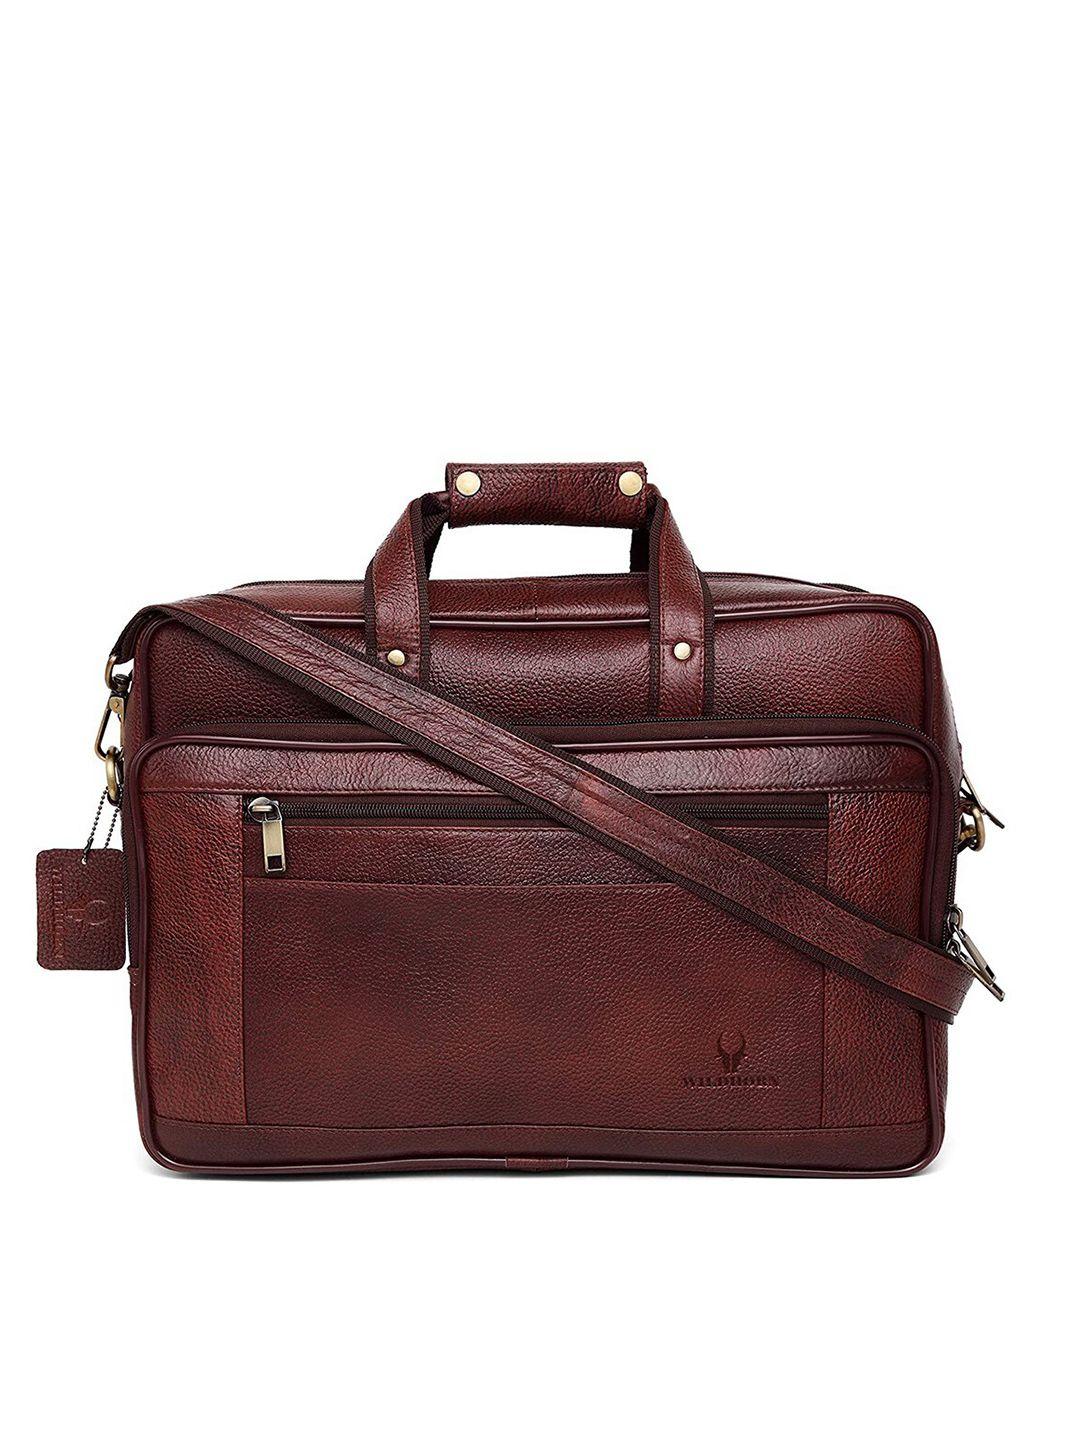 wildhorn men maroon genuine leather laptop bag